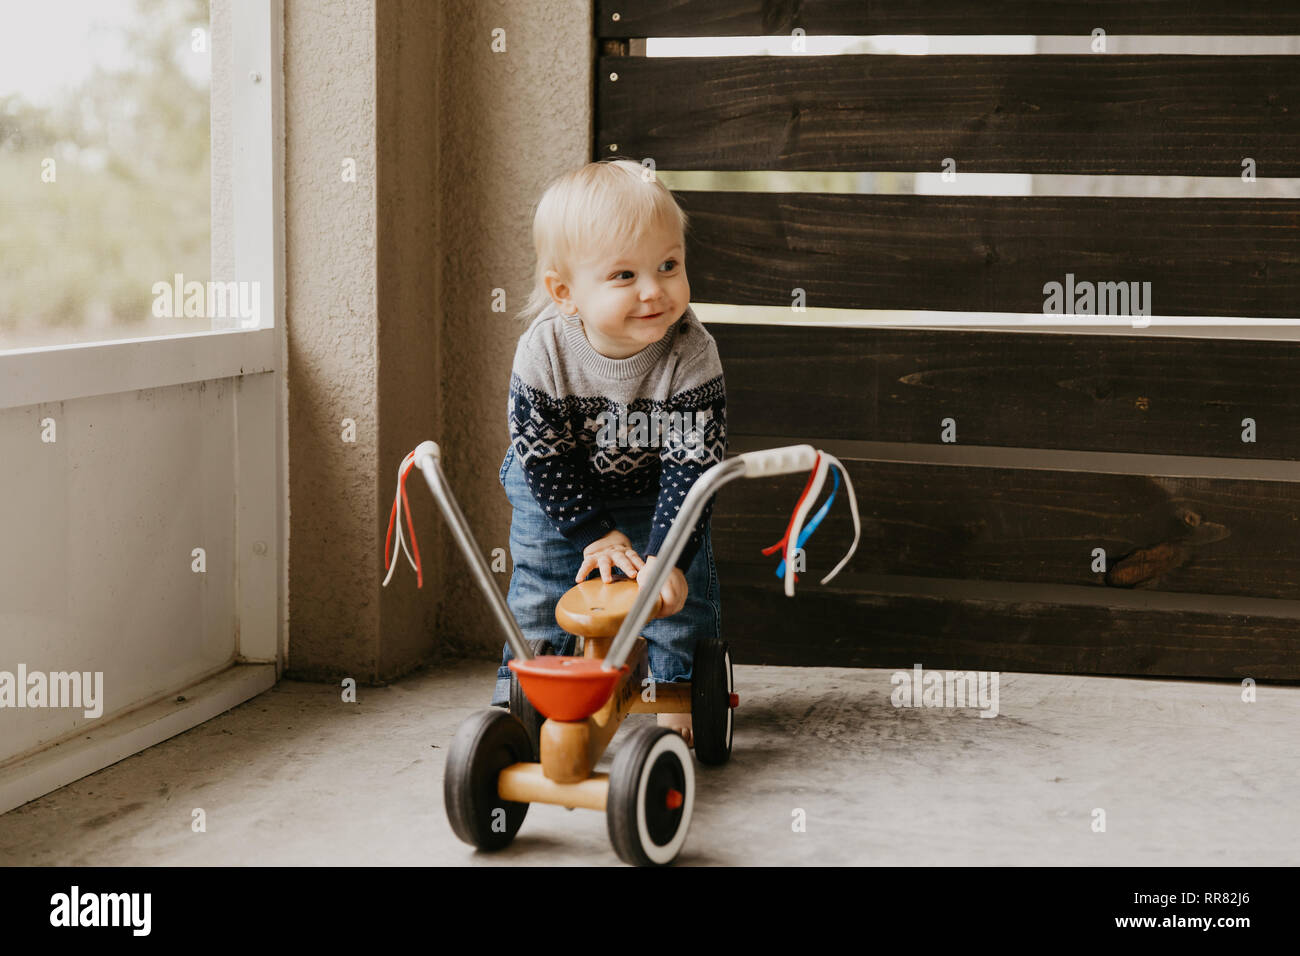 Kostbare adorable kleine süße blonde Baby Kleinkind Junge Spielen draussen auf Holzspielzeug Fahrrad Roller Mobile lächelt in die Kamera und Spaß Stockfoto